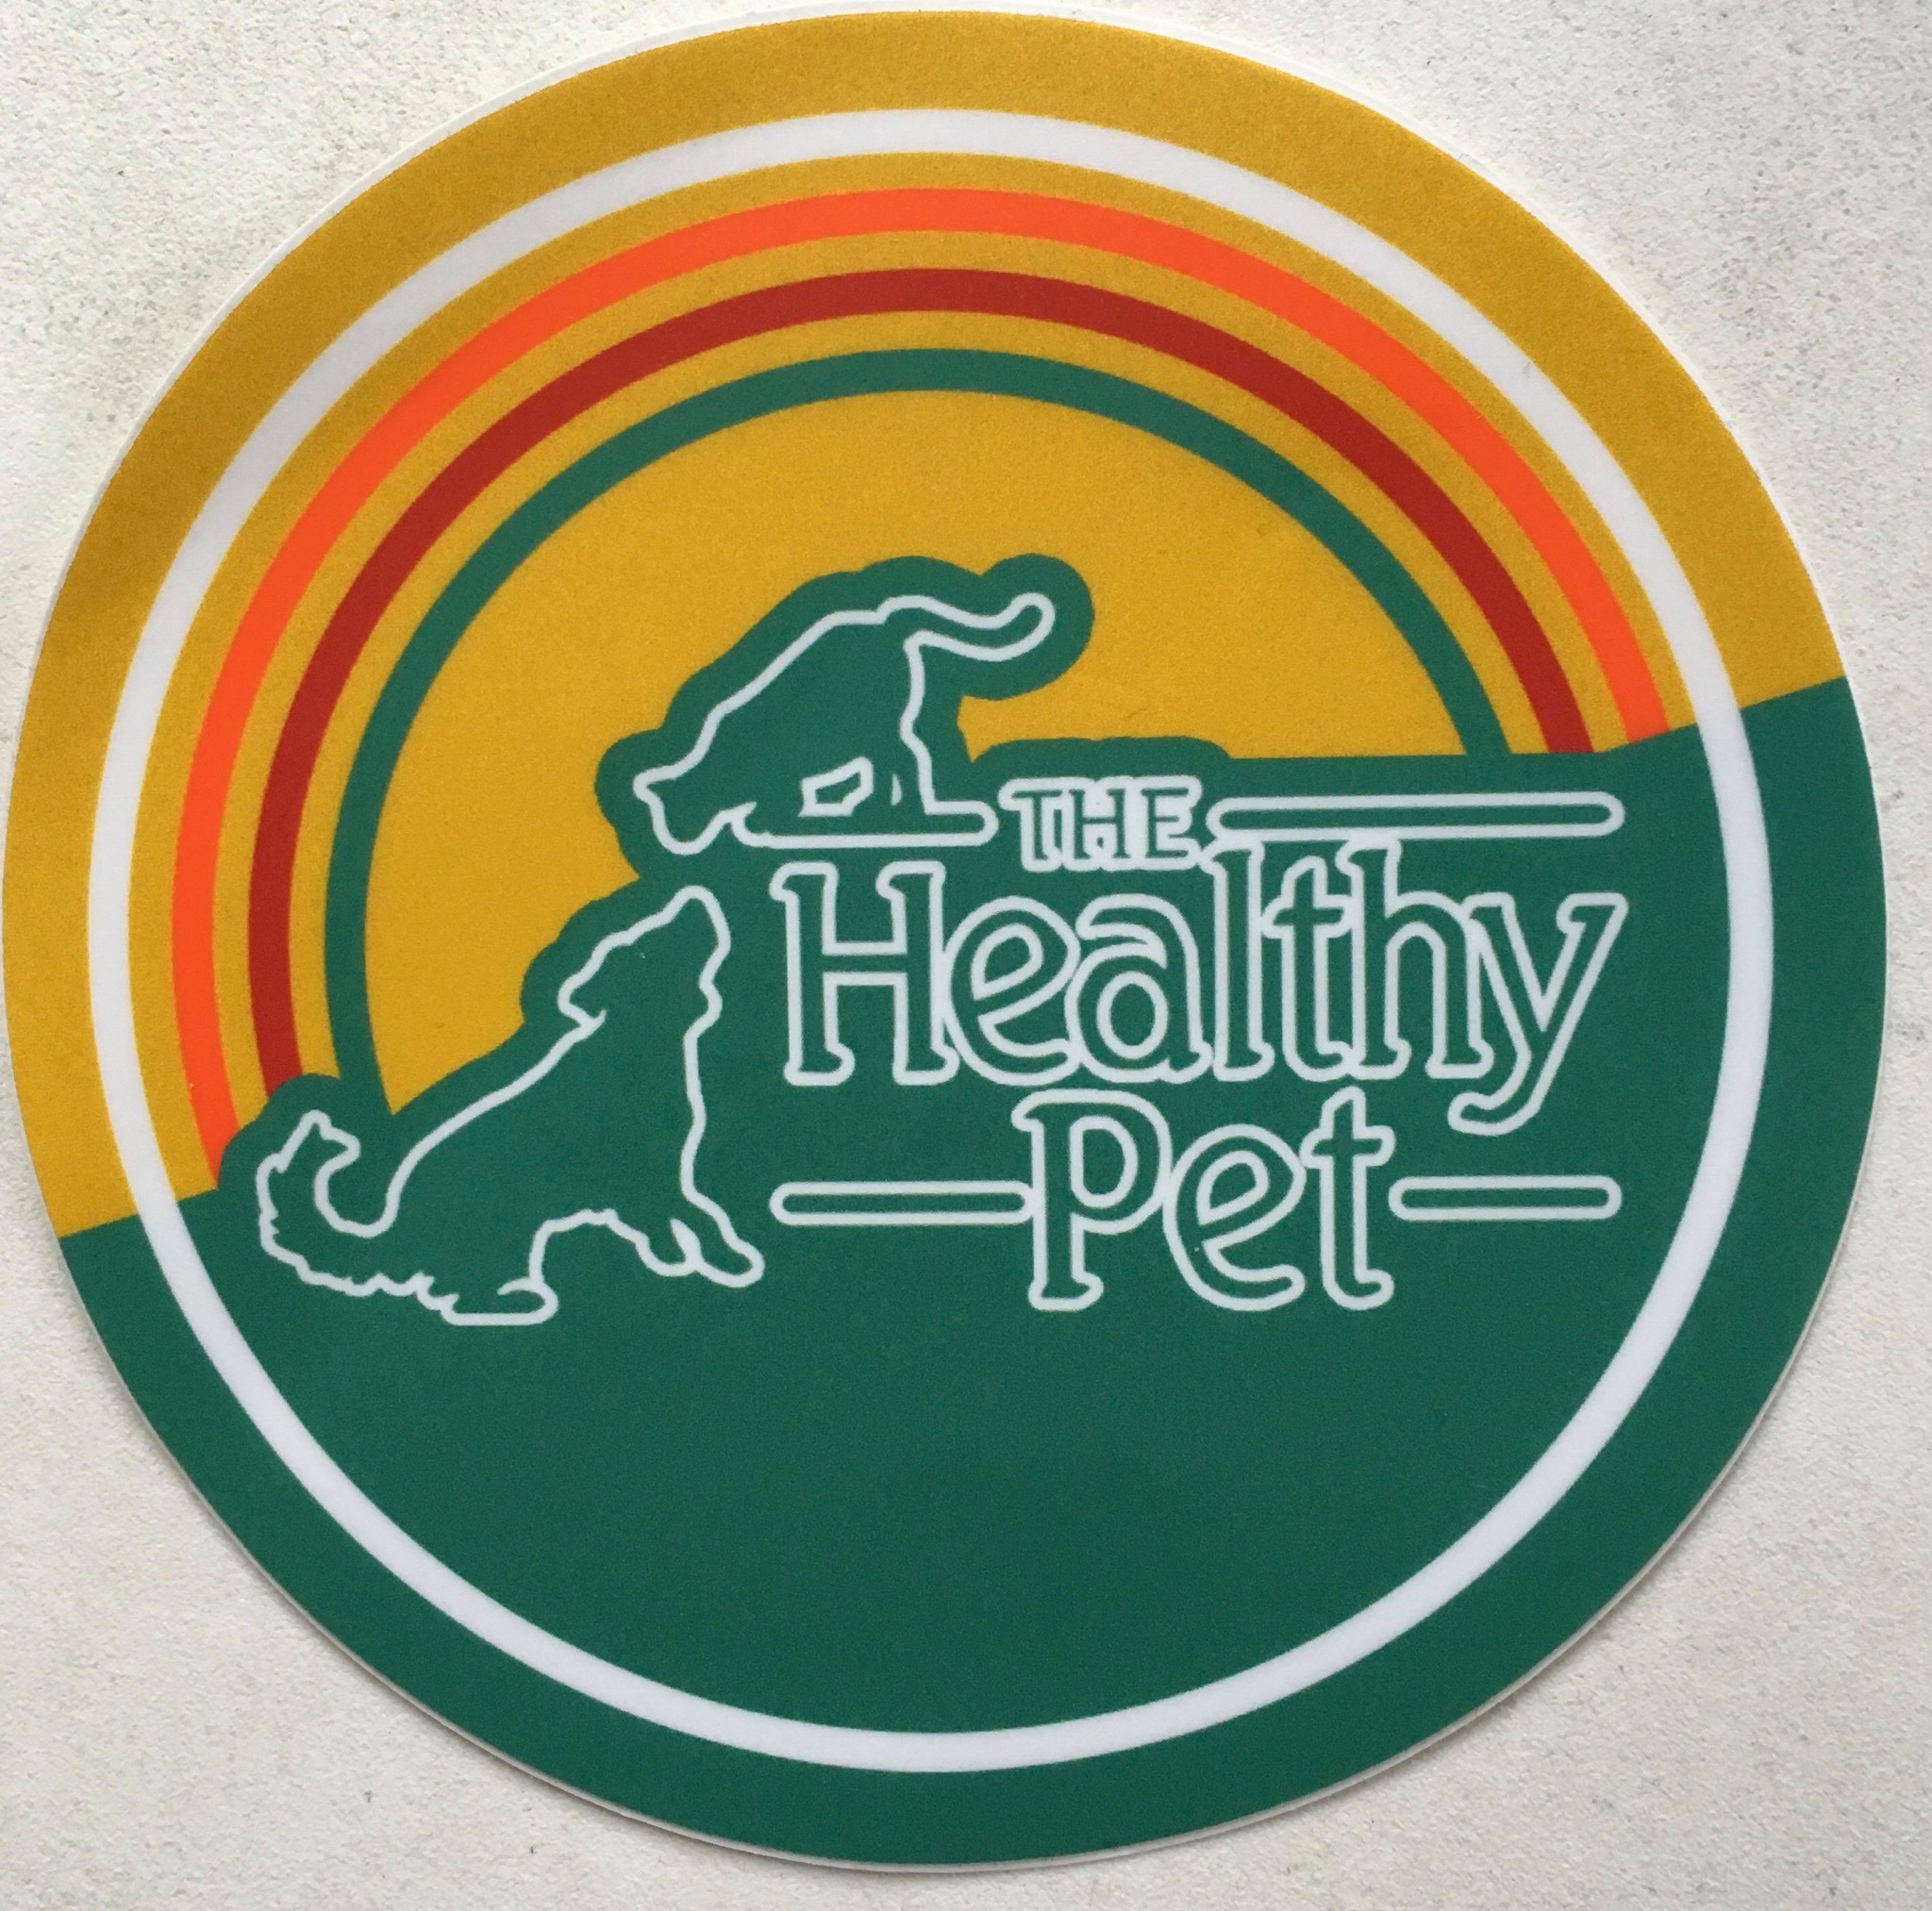 Company logo of The Healthy Pet